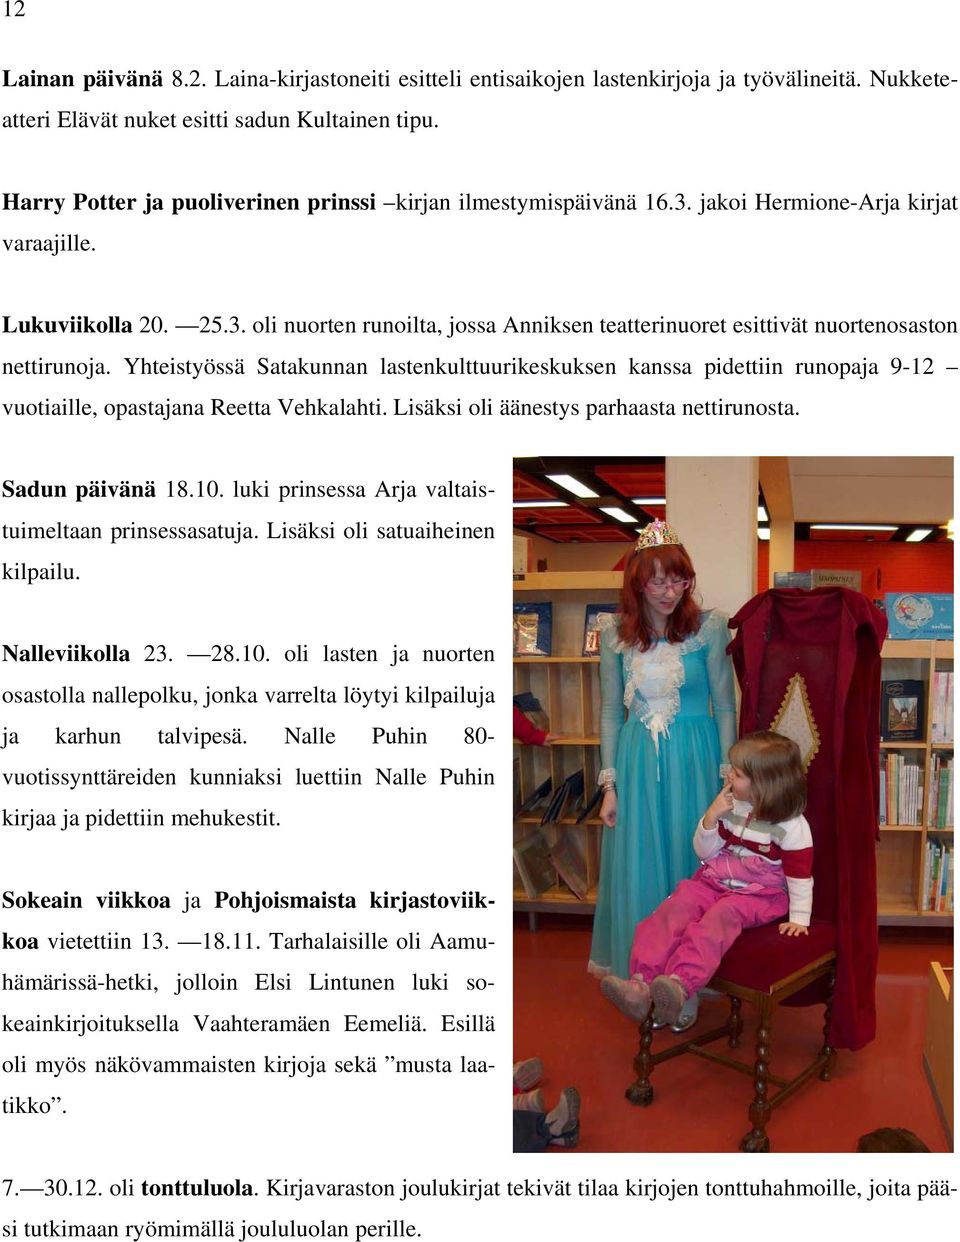 Yhteistyössä Satakunnan lastenkulttuurikeskuksen kanssa pidettiin runopaja 9-12 vuotiaille, opastajana Reetta Vehkalahti. Lisäksi oli äänestys parhaasta nettirunosta. Sadun päivänä 18.10.